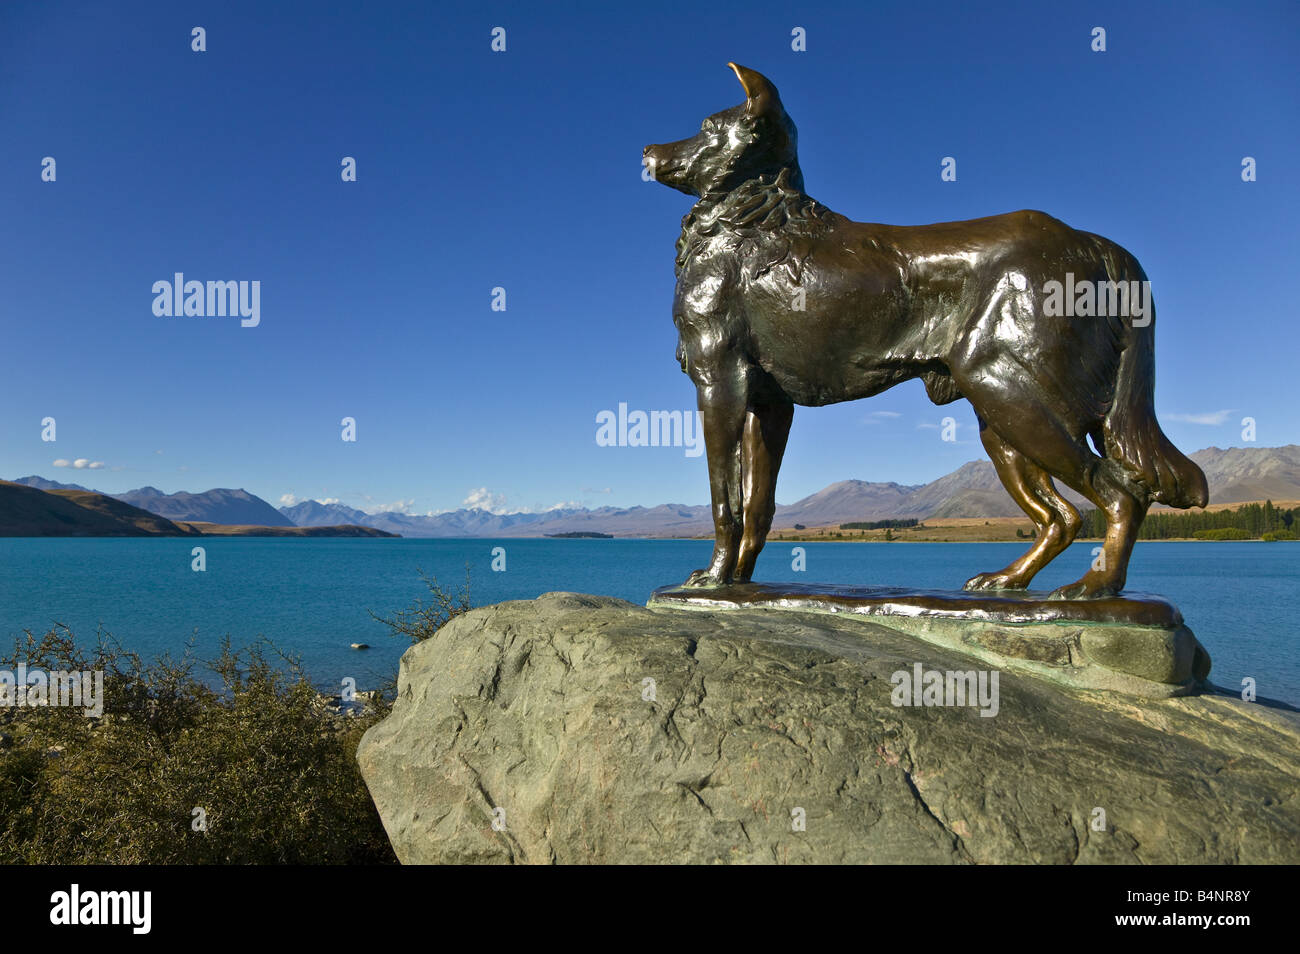 Mackenzie monument on the banks of Lake Tekapo, South Island, New Zealand Stock Photo